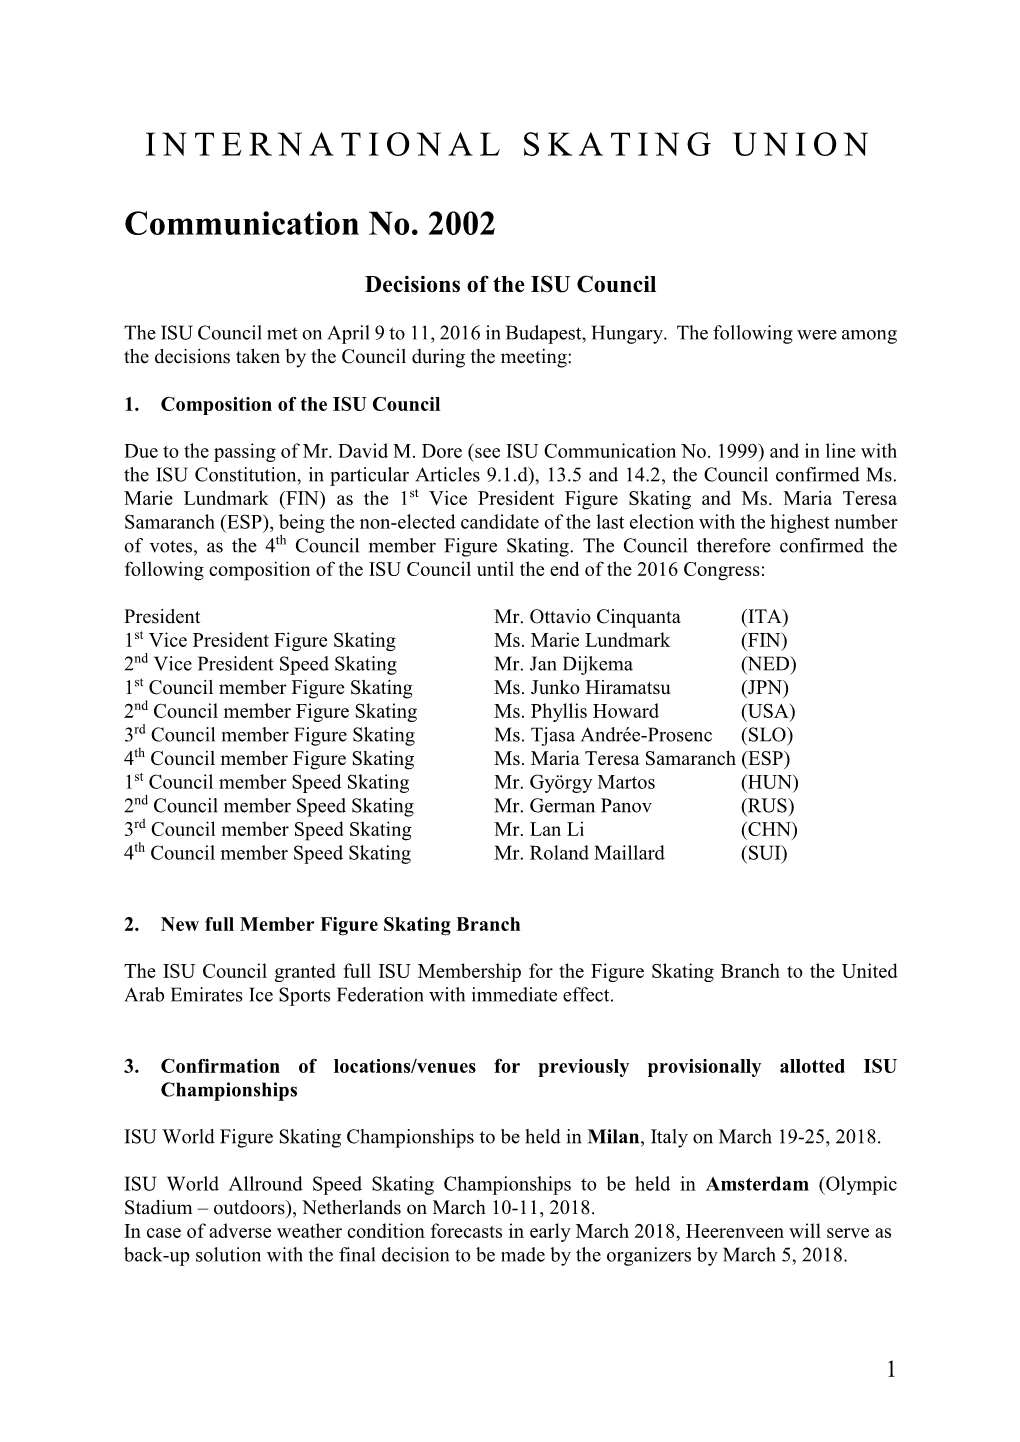 ISU Communication 2002